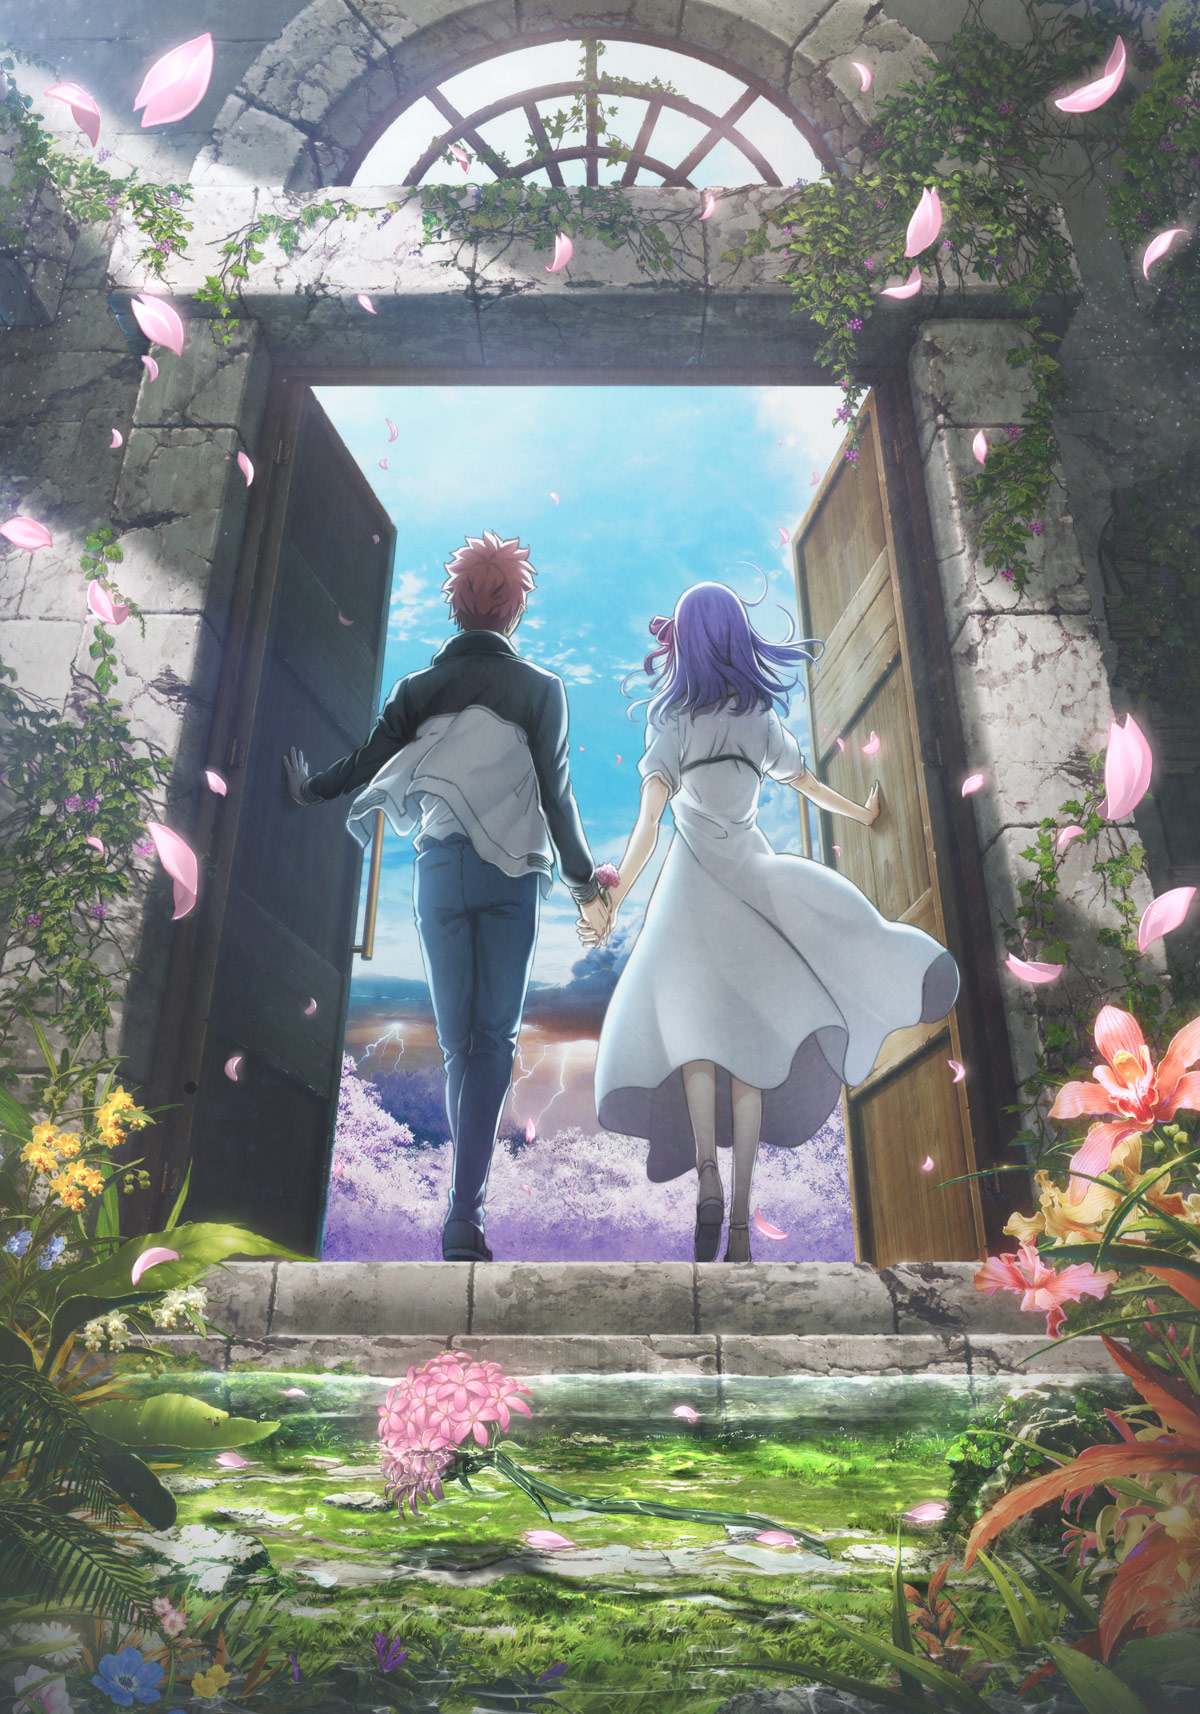 Fate/stay night [Heaven's Feel] THE MOVIE II. lost butterfly Blu-ray  Trailer 